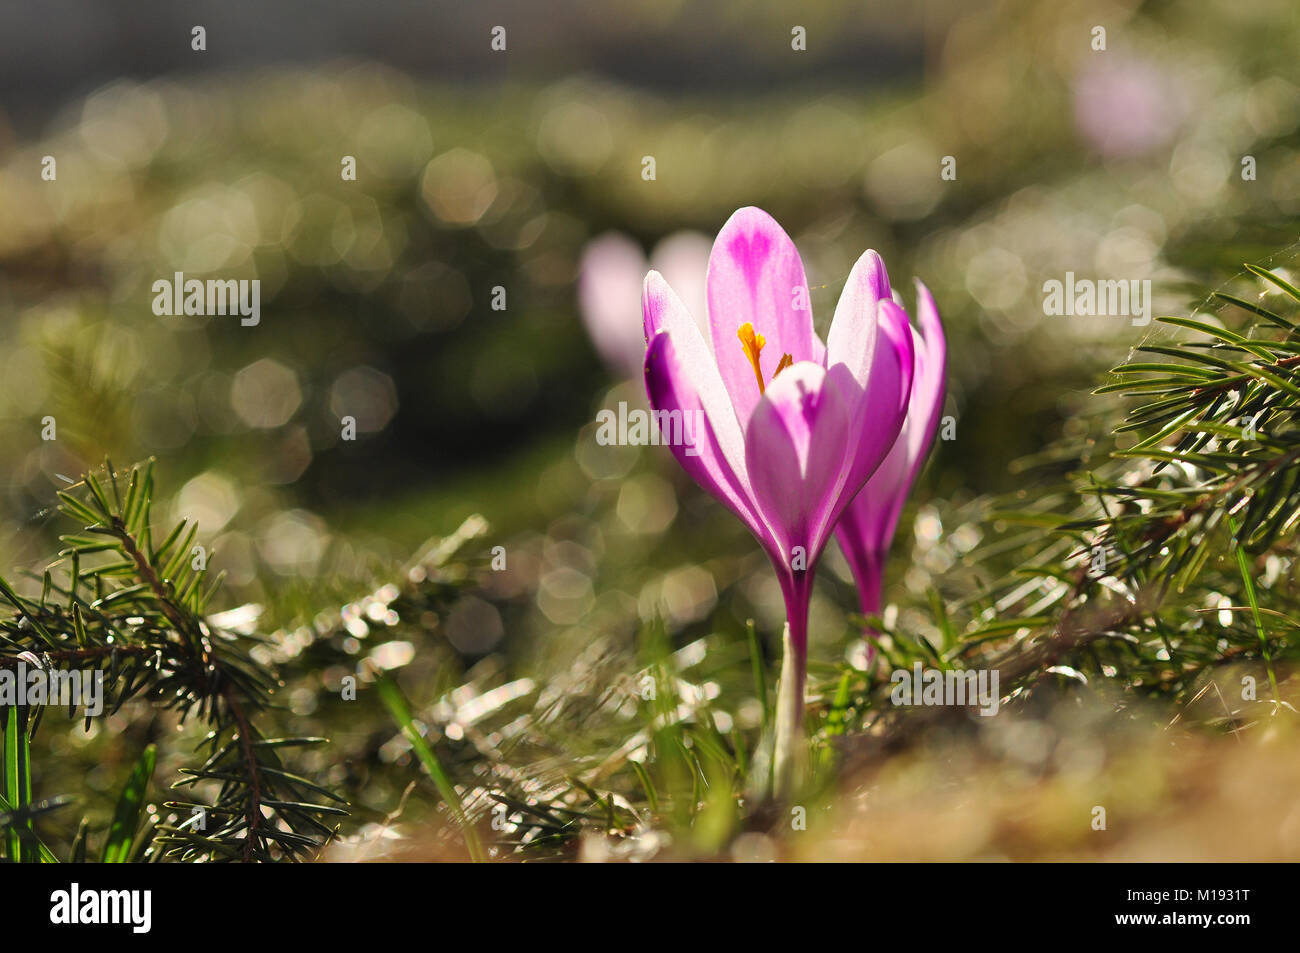 Spring flowering bulbs of purple Crocus flower. Crocus vernus Stock Photo